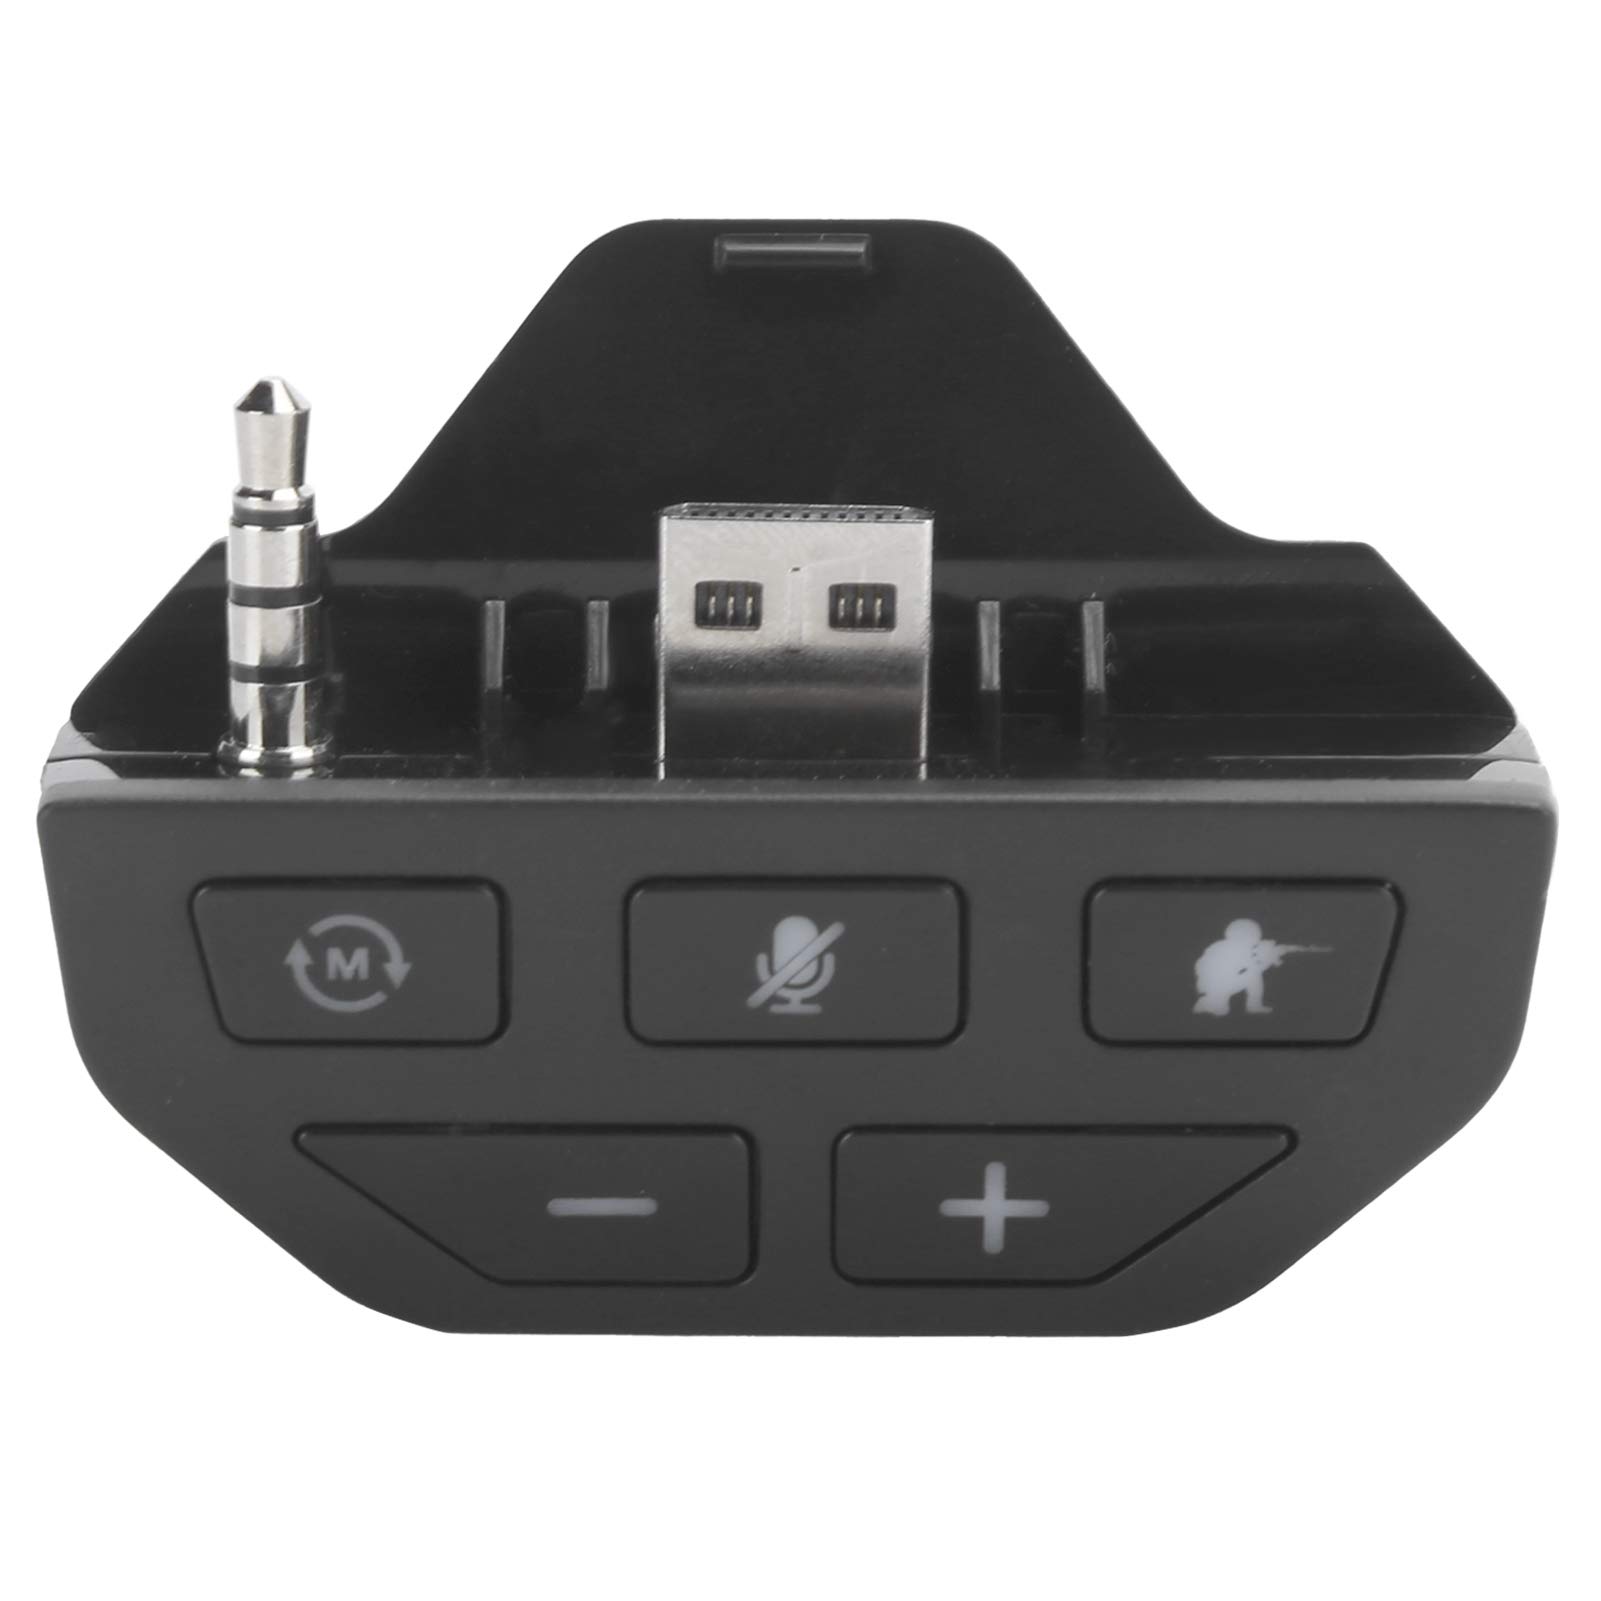 BTER Stereo-Kopfhörer-Adapter Controller für Xbox One, kabelloser Audio-Adapter mit Mehreren Audio-Modi mit 3,5-mm-Buchse, Verstellbarer Controller-Sounderhöhung für Xbox, Gamepad (schwarz)